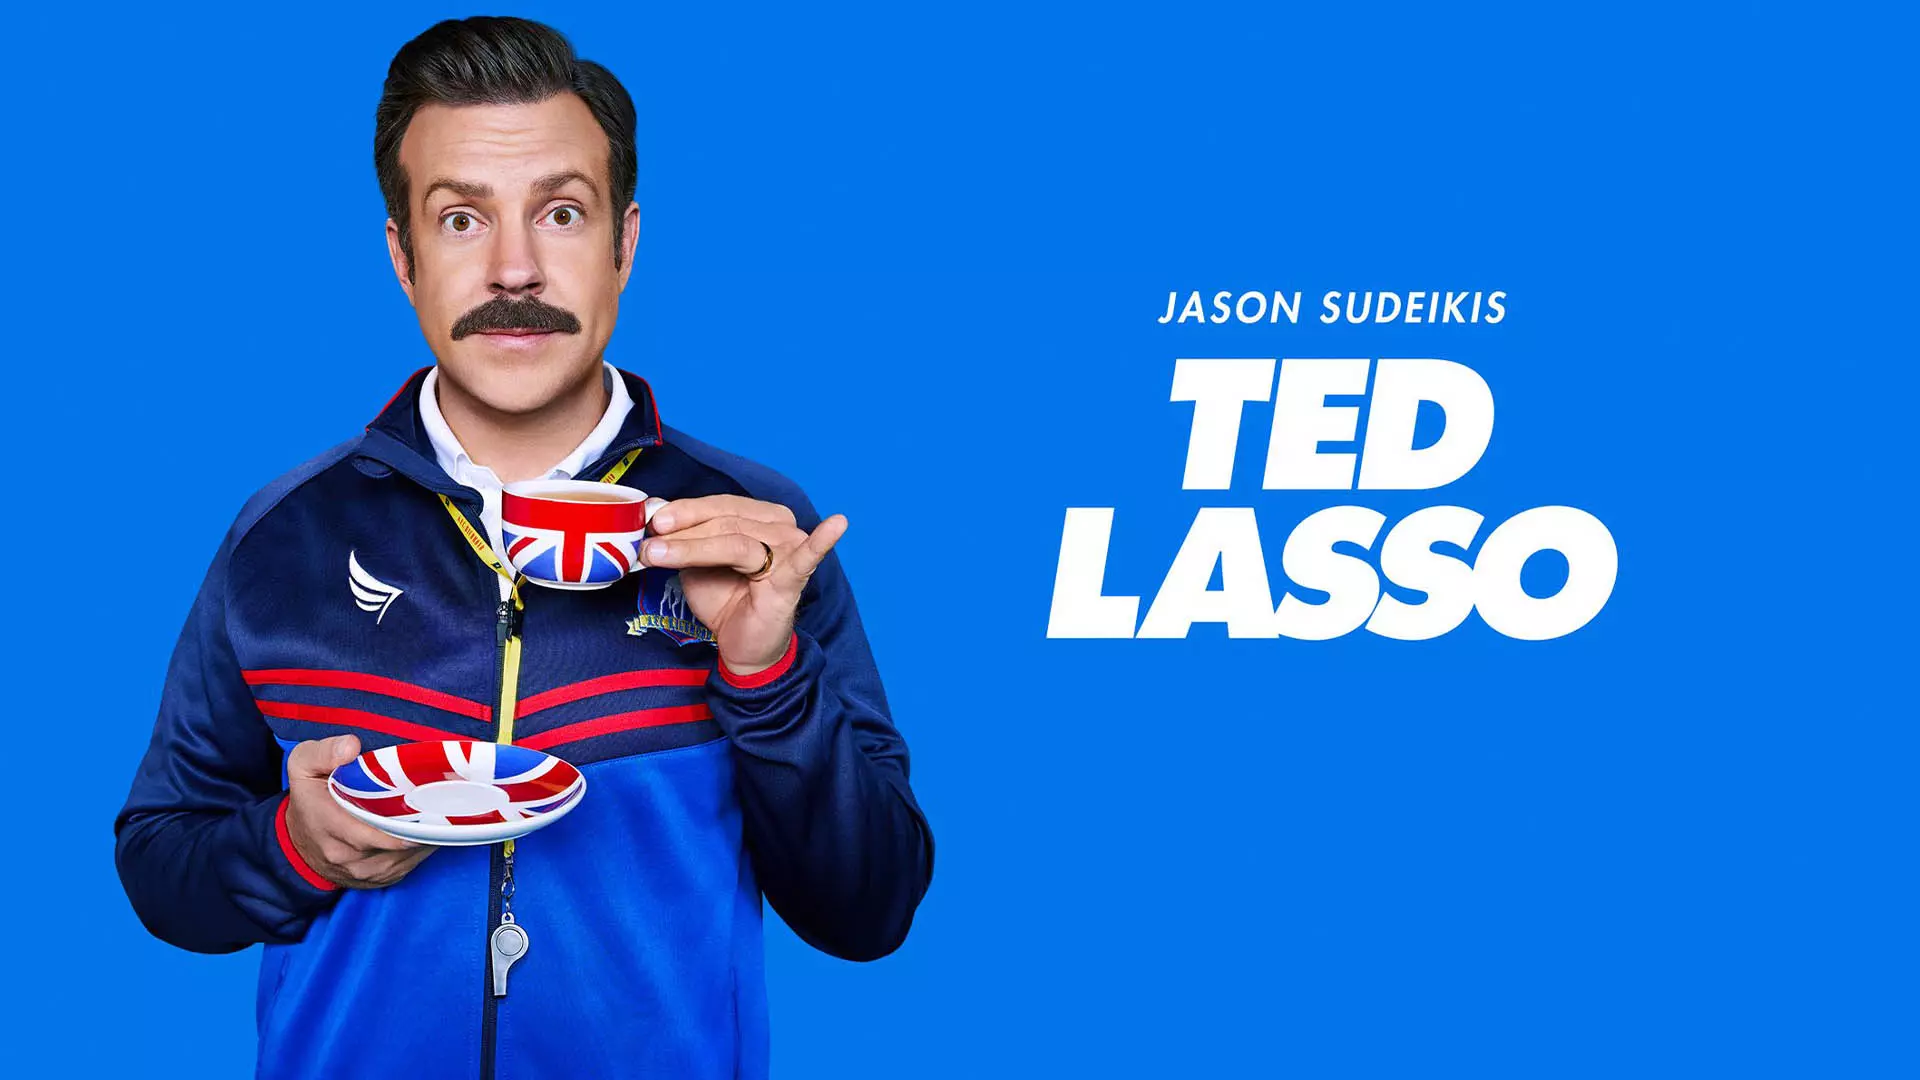 کاور آبی رنگ سریال Ted Lasso با تصویری از جیستون سودیکیس و فنجانی با پرچم بریتانیا